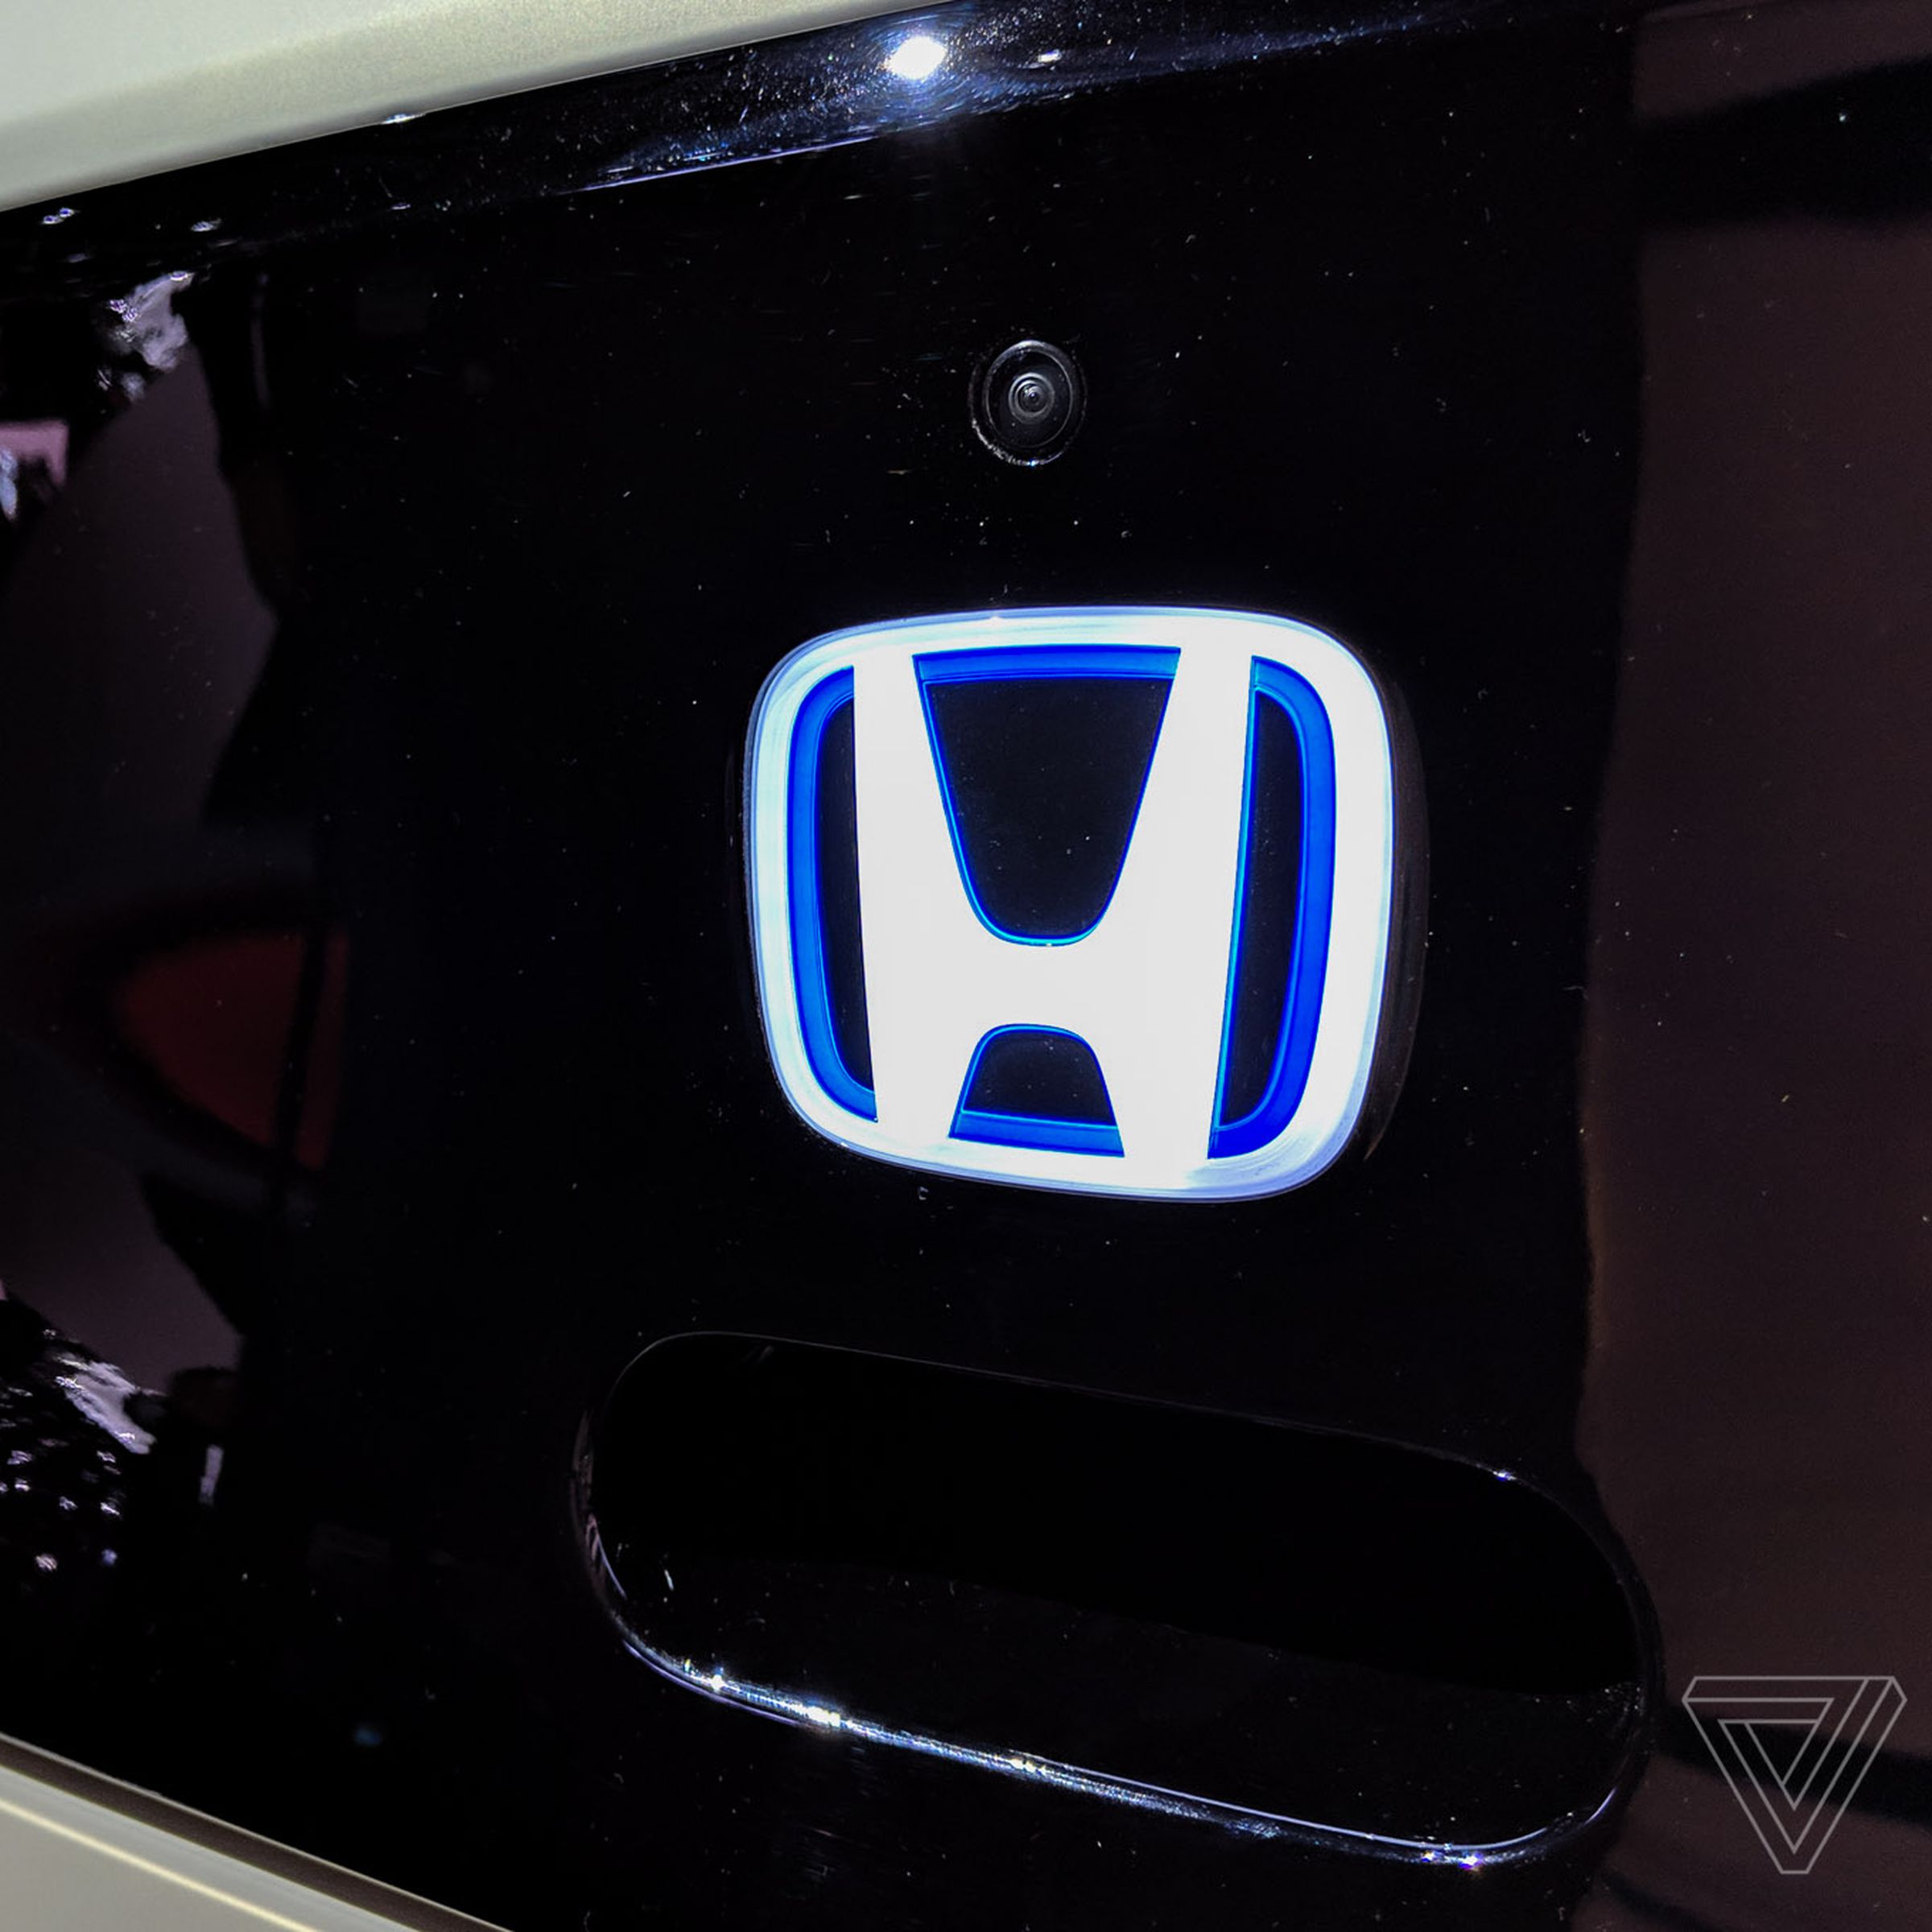 A lit-up Honda logo